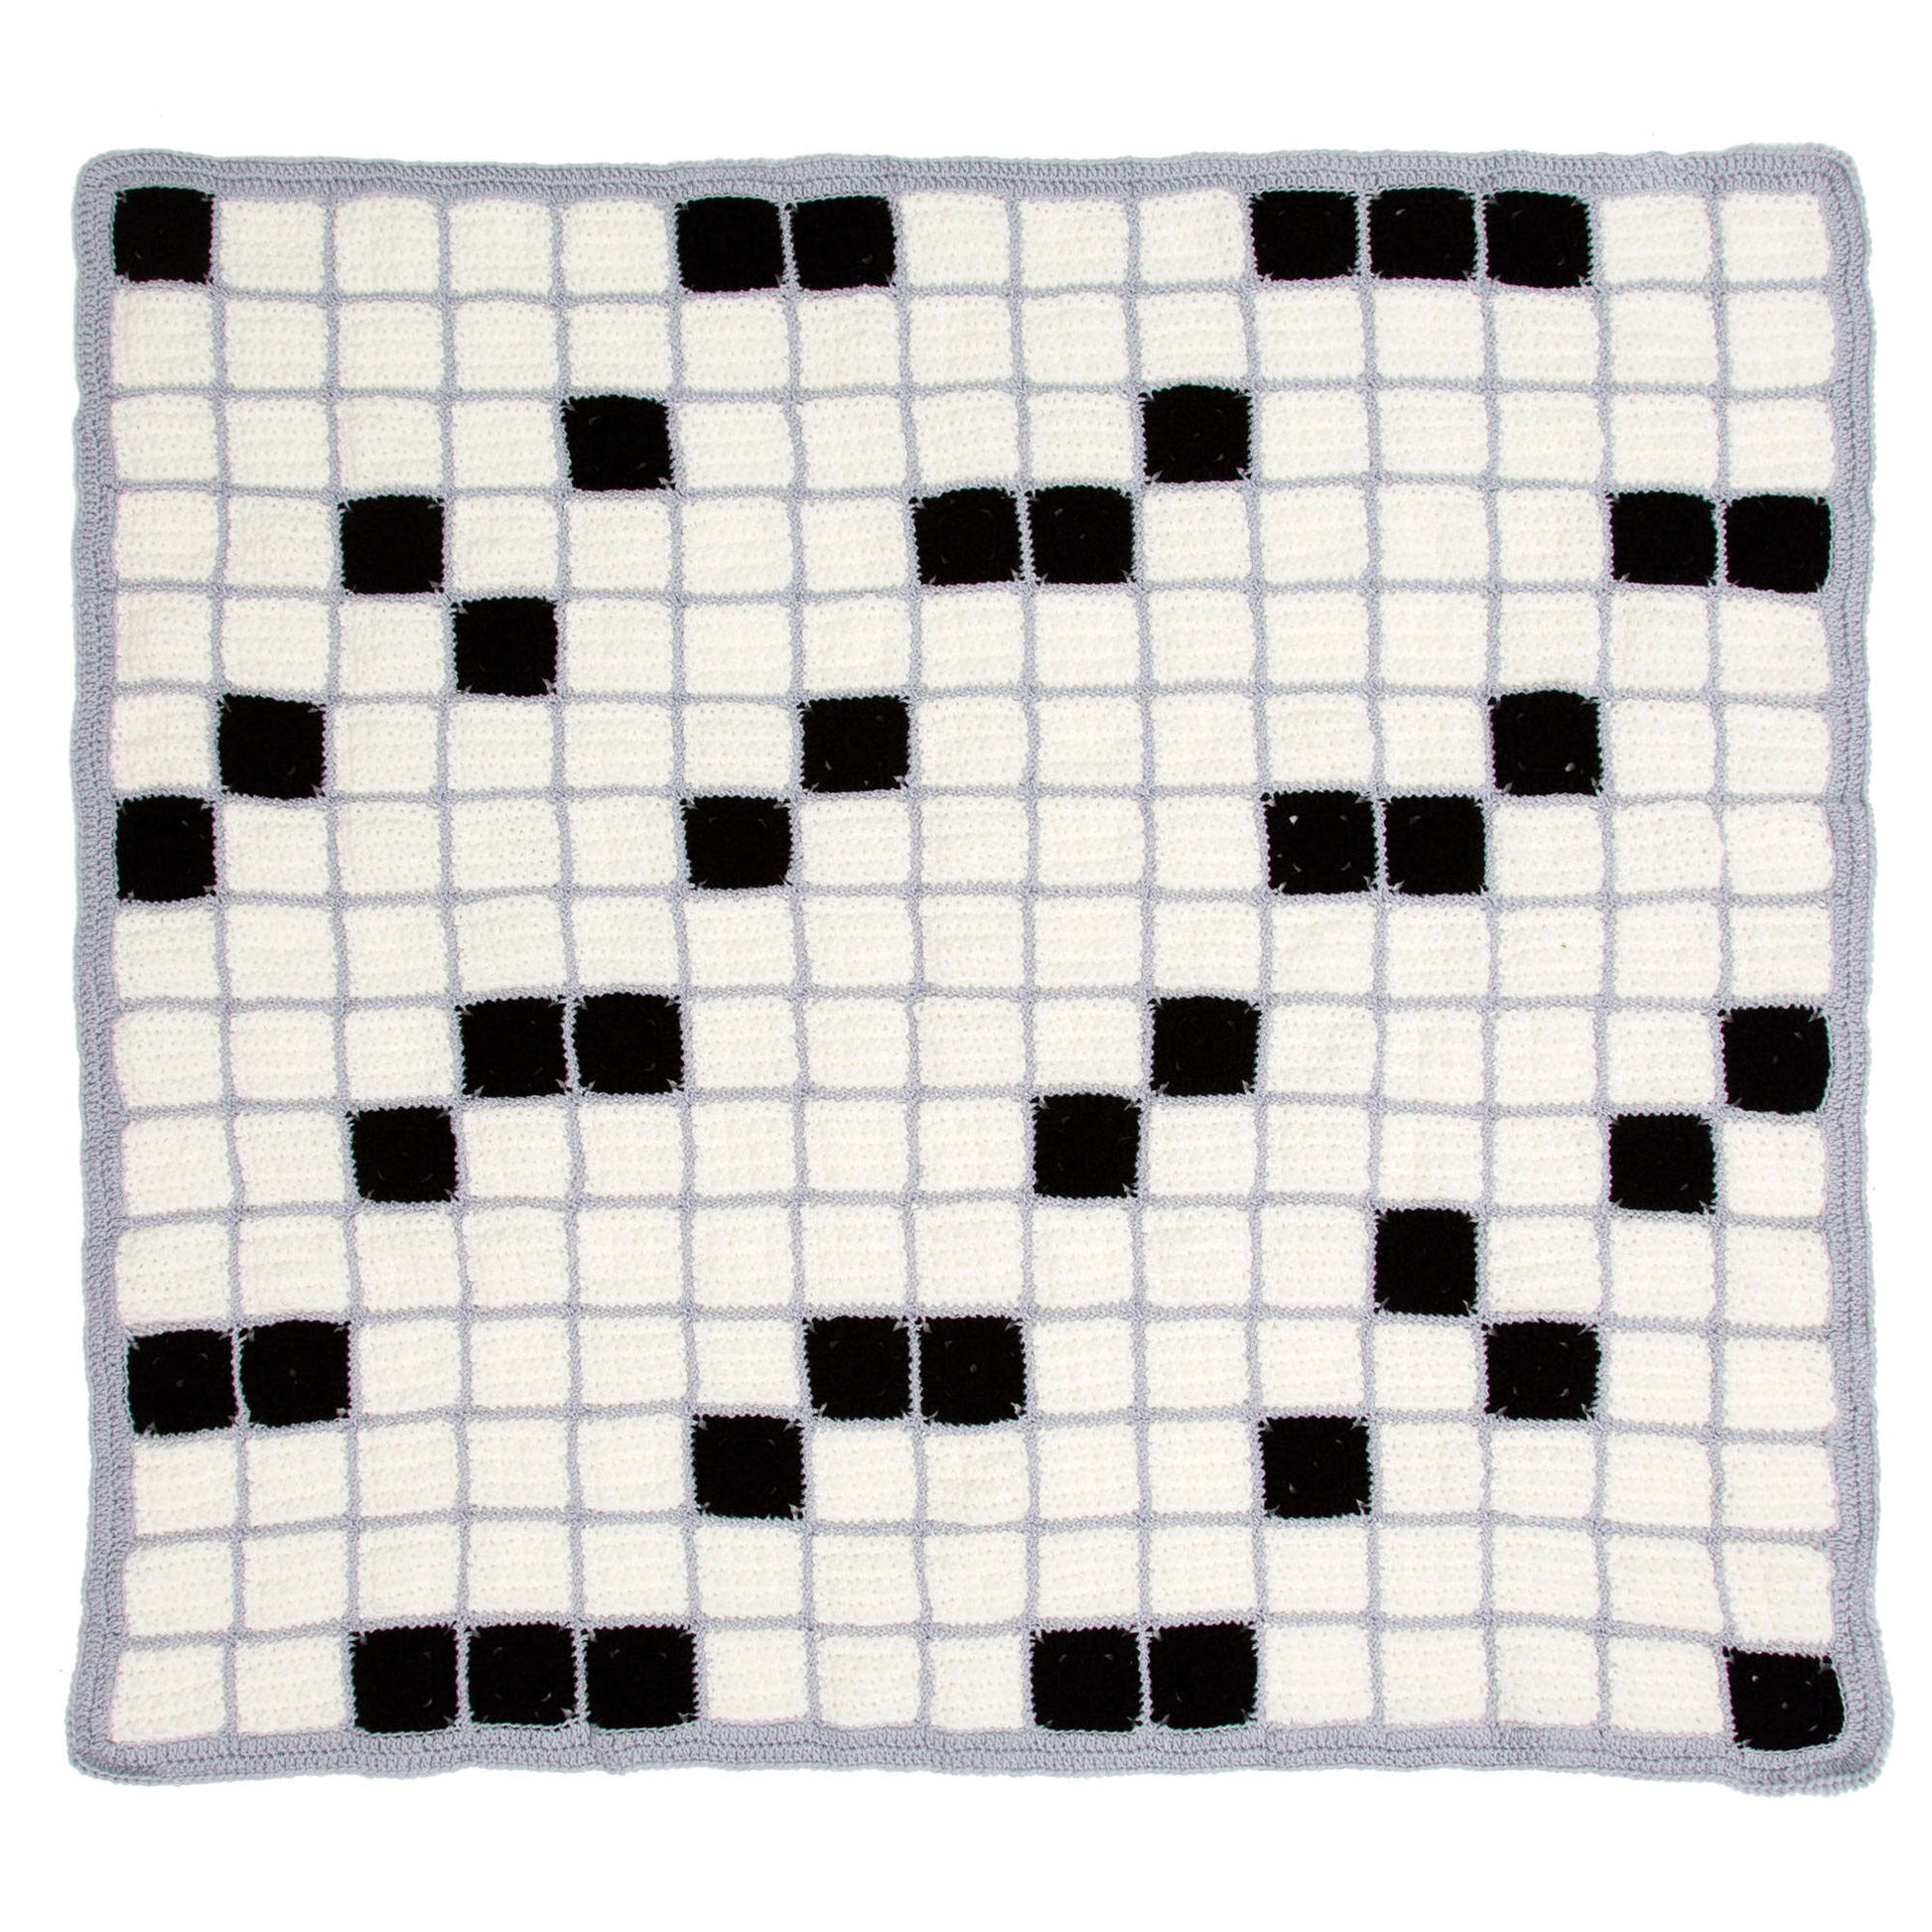 Free Red Heart Crochet Crossword Lovers Throw Pattern